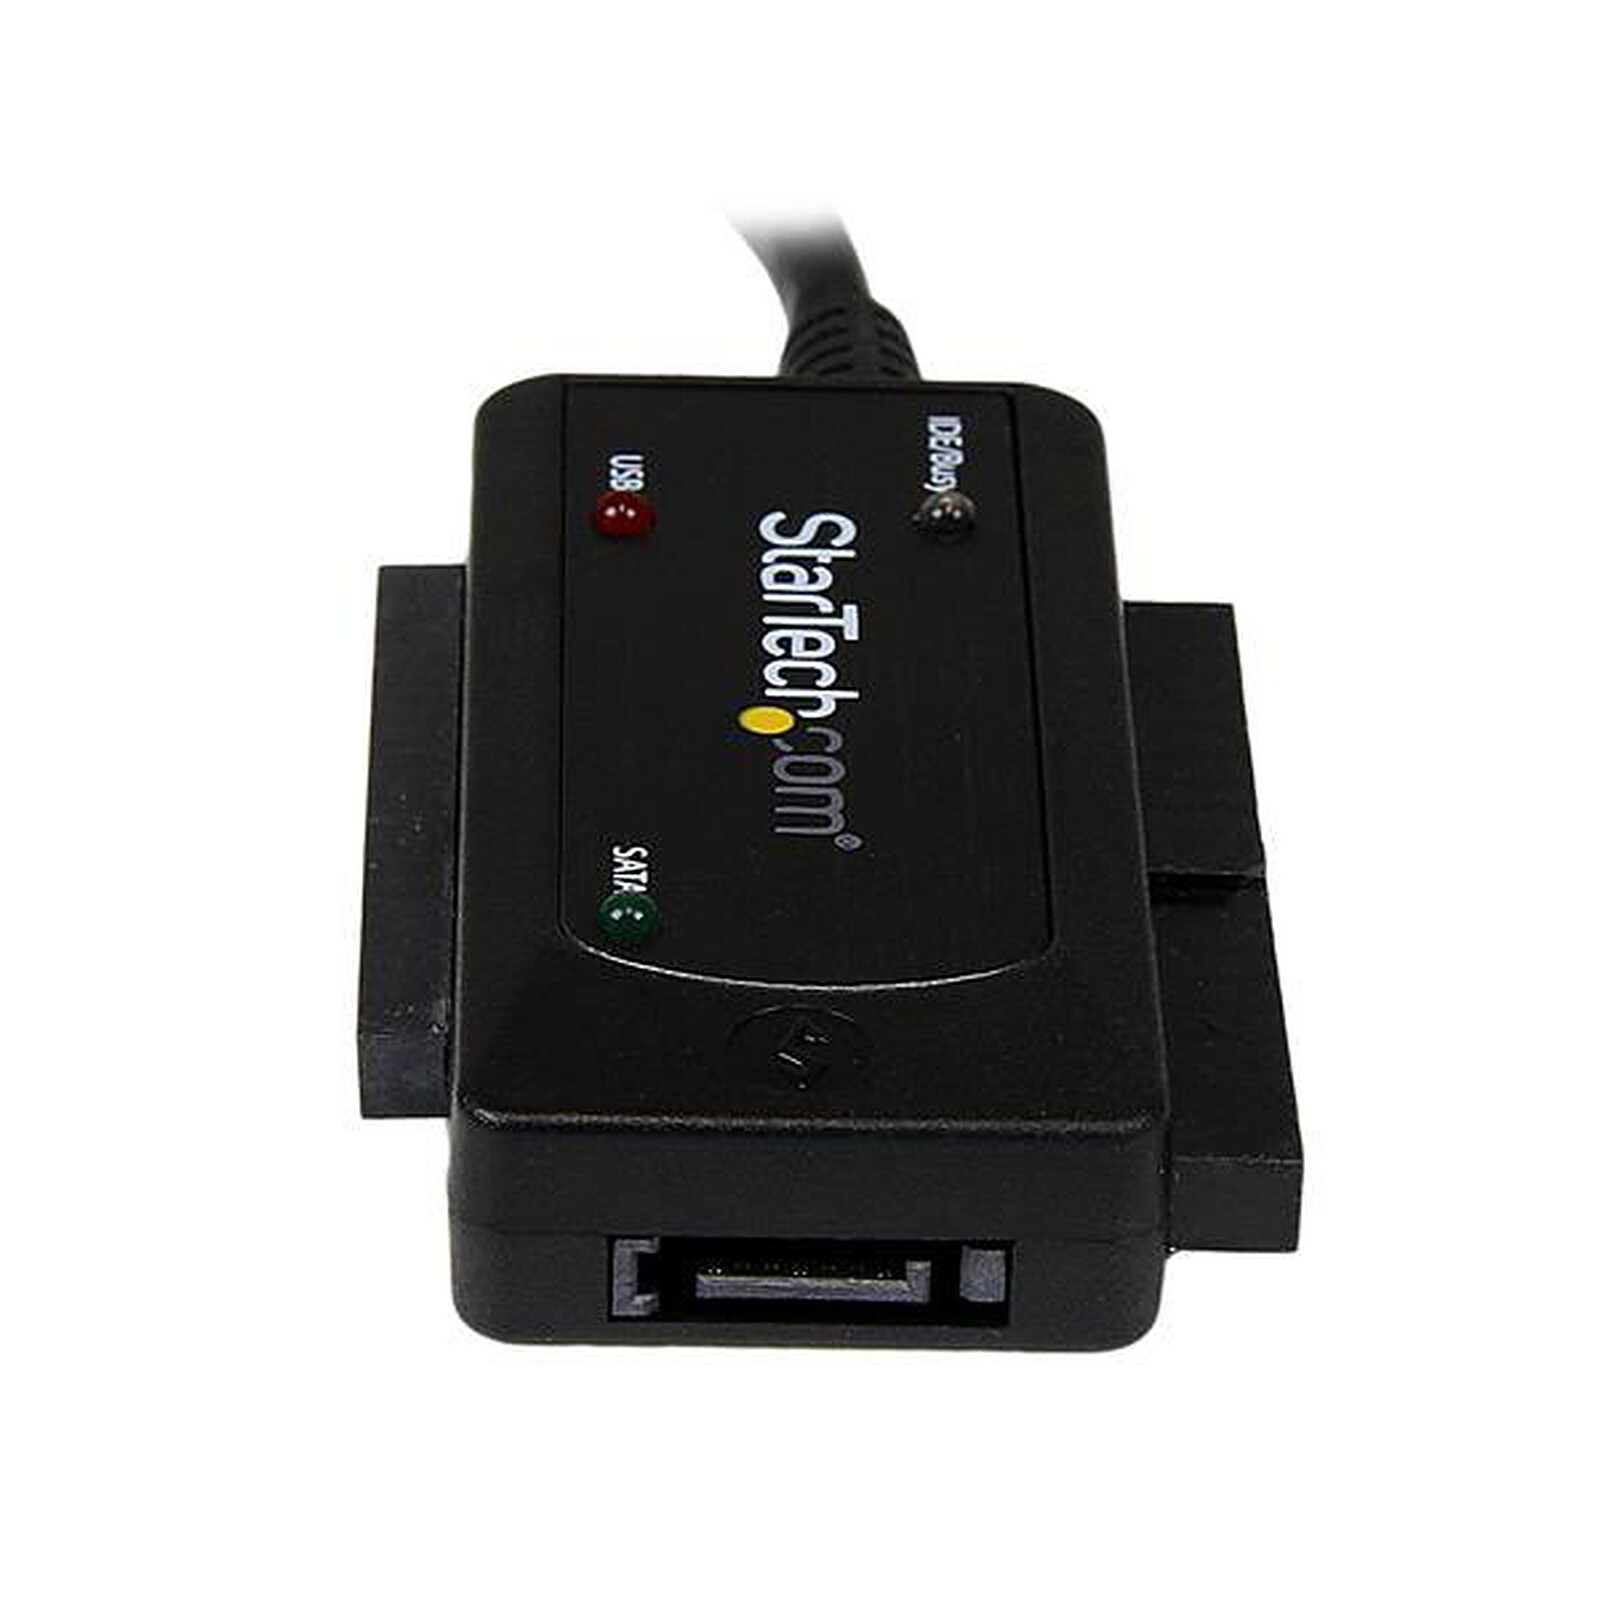 Câble adaptateur SATA double USB 3.0 personnalisé avec USB 2.0 Fournisseurs  de câbles d'alimentation Usine de fabricants - STARTE